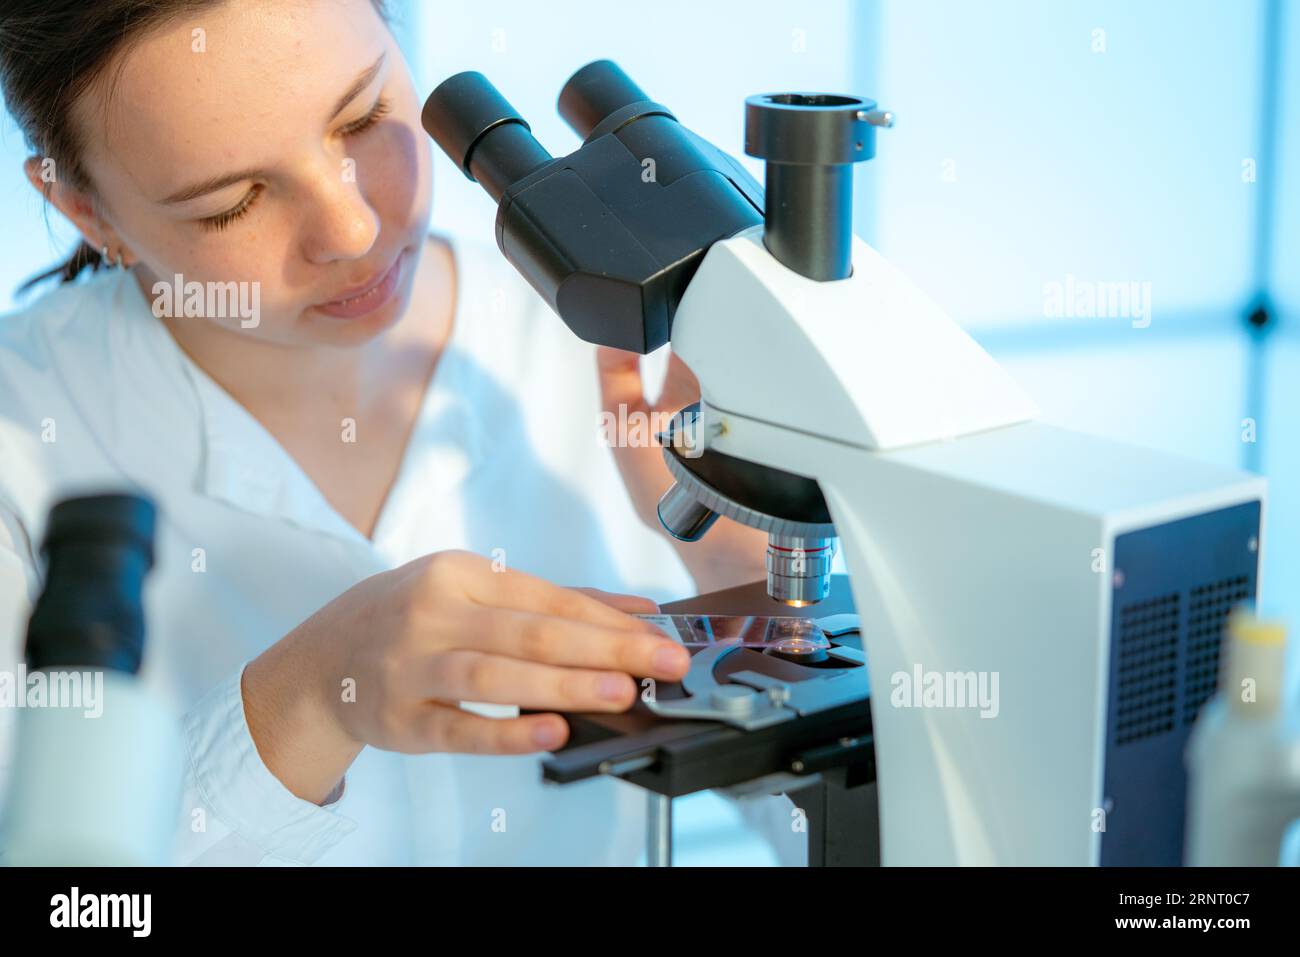 Esame dello sviluppo embrionale: I microscopi consentono di studiare i processi di sviluppo delle cellule embrionali e degli organi. Foto Stock